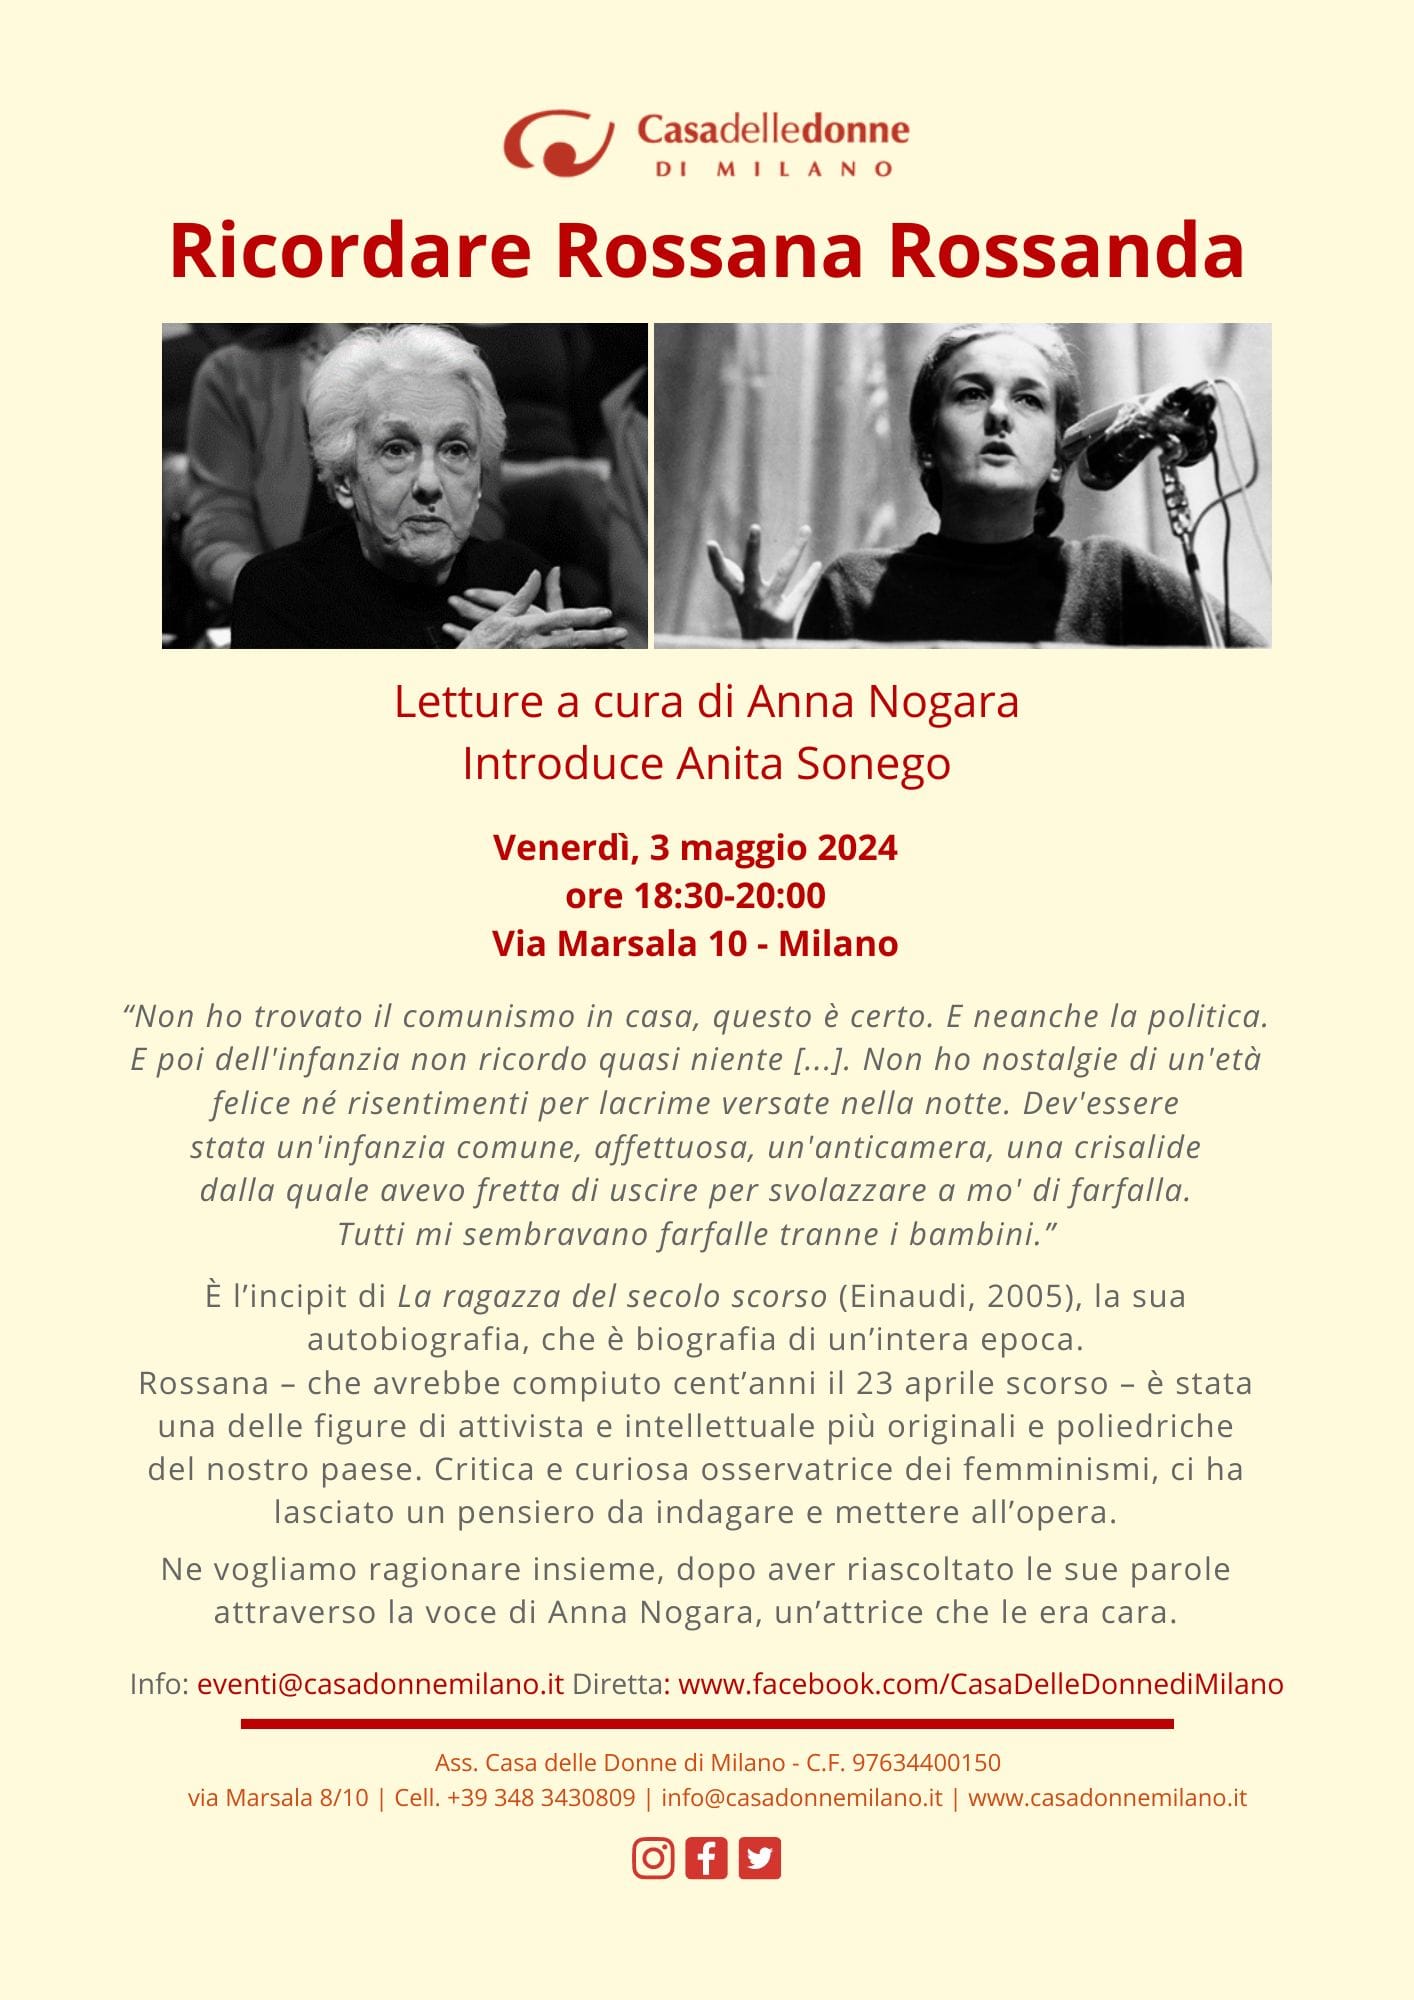 Ricordare Rossana Rossanda @ Casa delle Donne di Milano